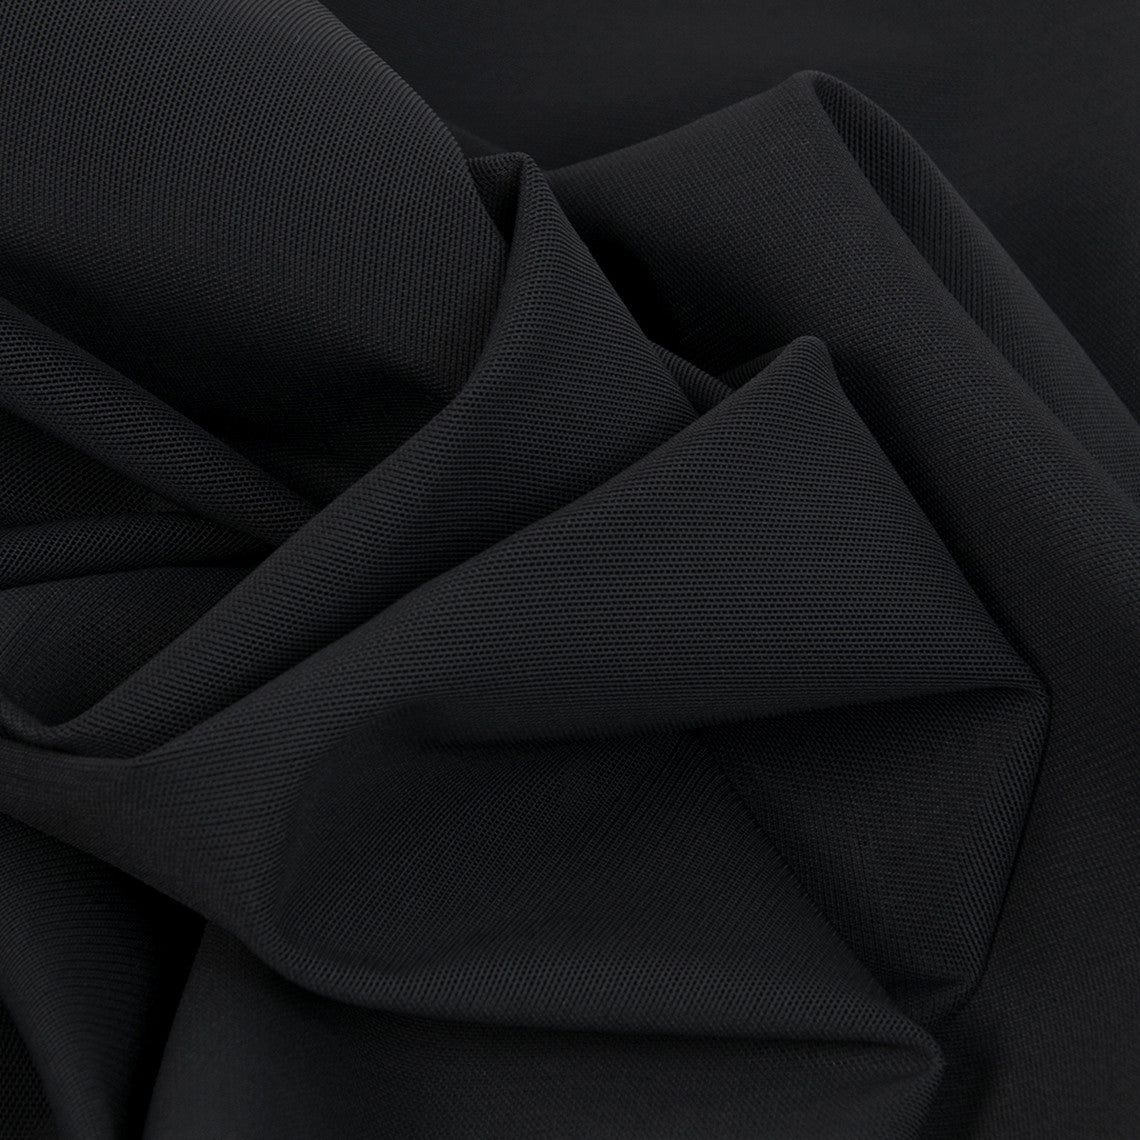 Black Power Mesh 2850 - Fabrics4Fashion